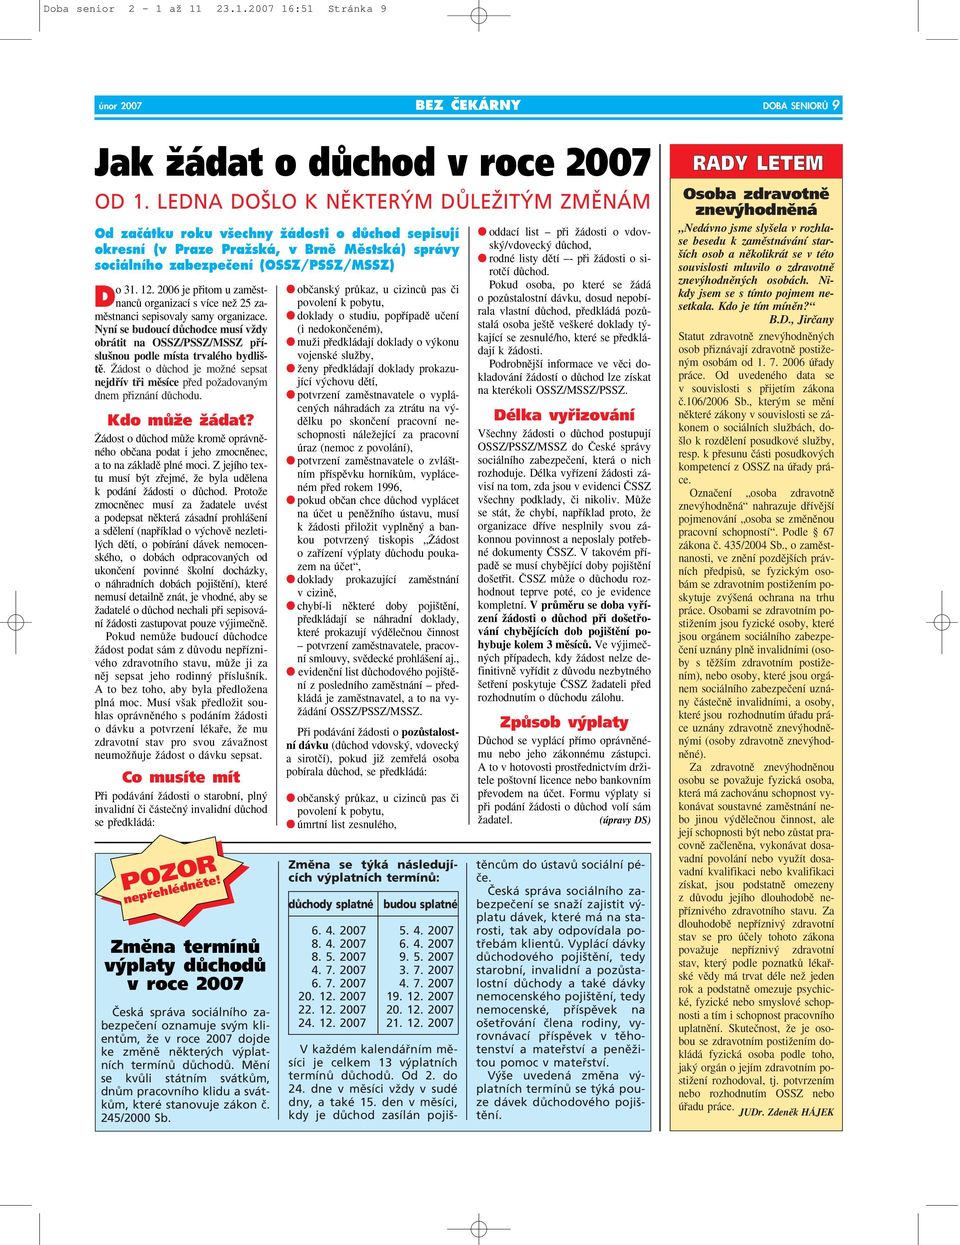 2006 je pfiitom u zamûst- organizací s více neï 25 za- DnancÛ mûstnanci sepisovaly samy organizace.